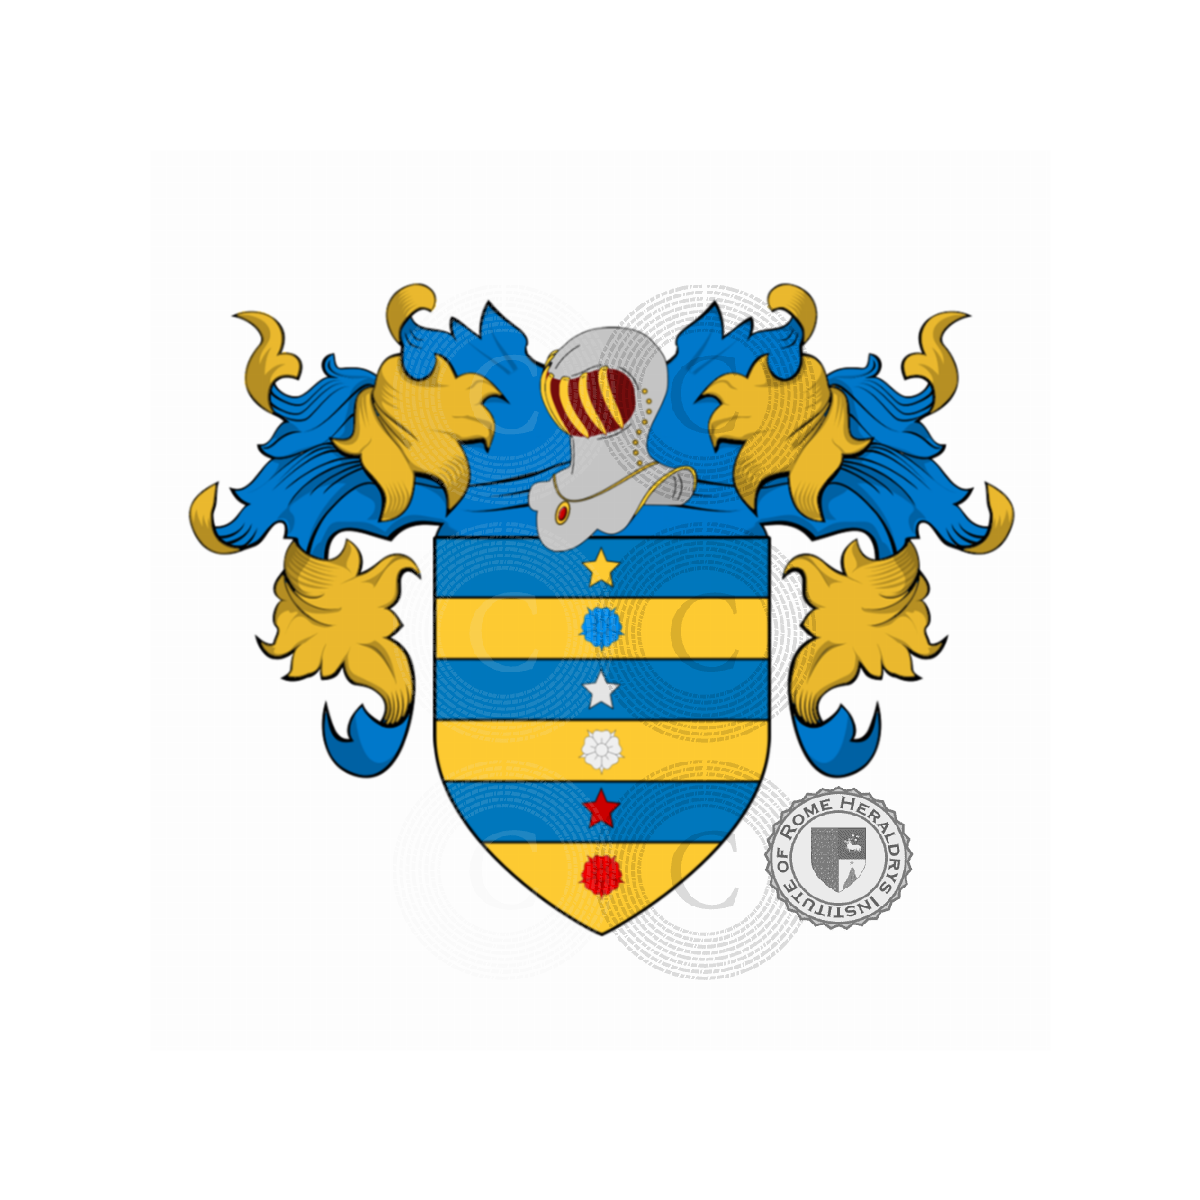 Wappen der FamilieConselvo (da), Causelve,Consalvo,Conselvo,da Conselve,da Conselvo